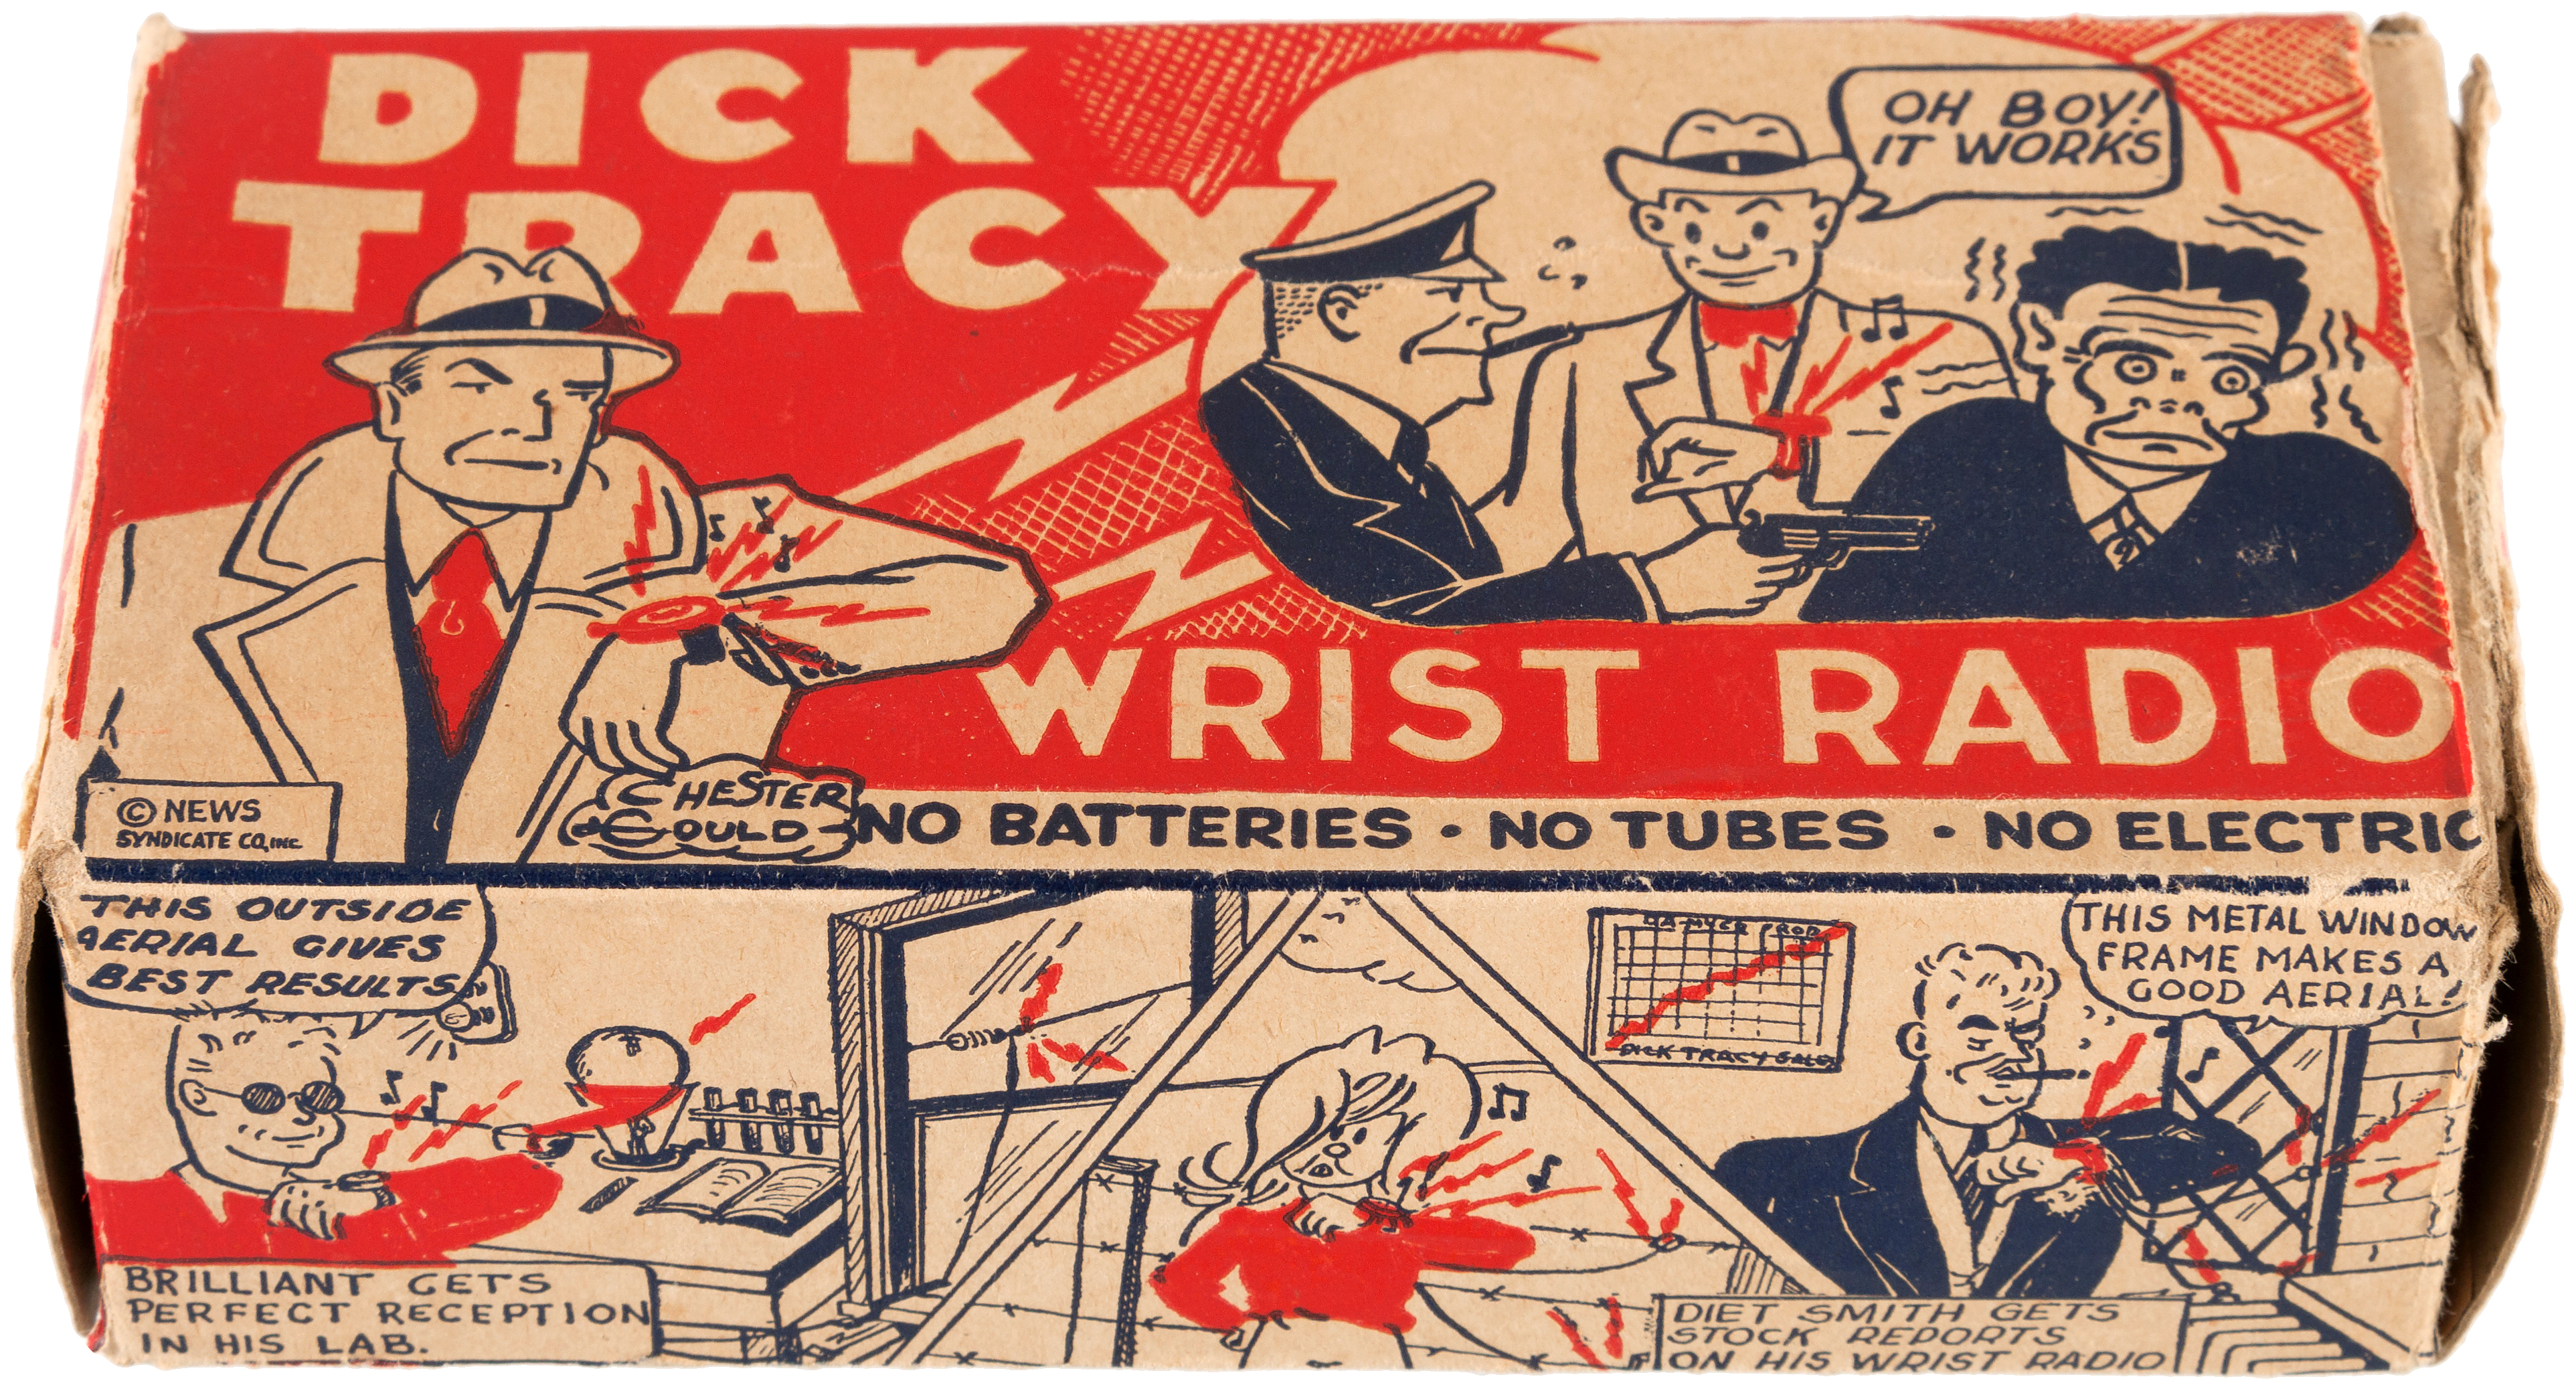 Dick Tracy Wrist Radio Movie Poster 